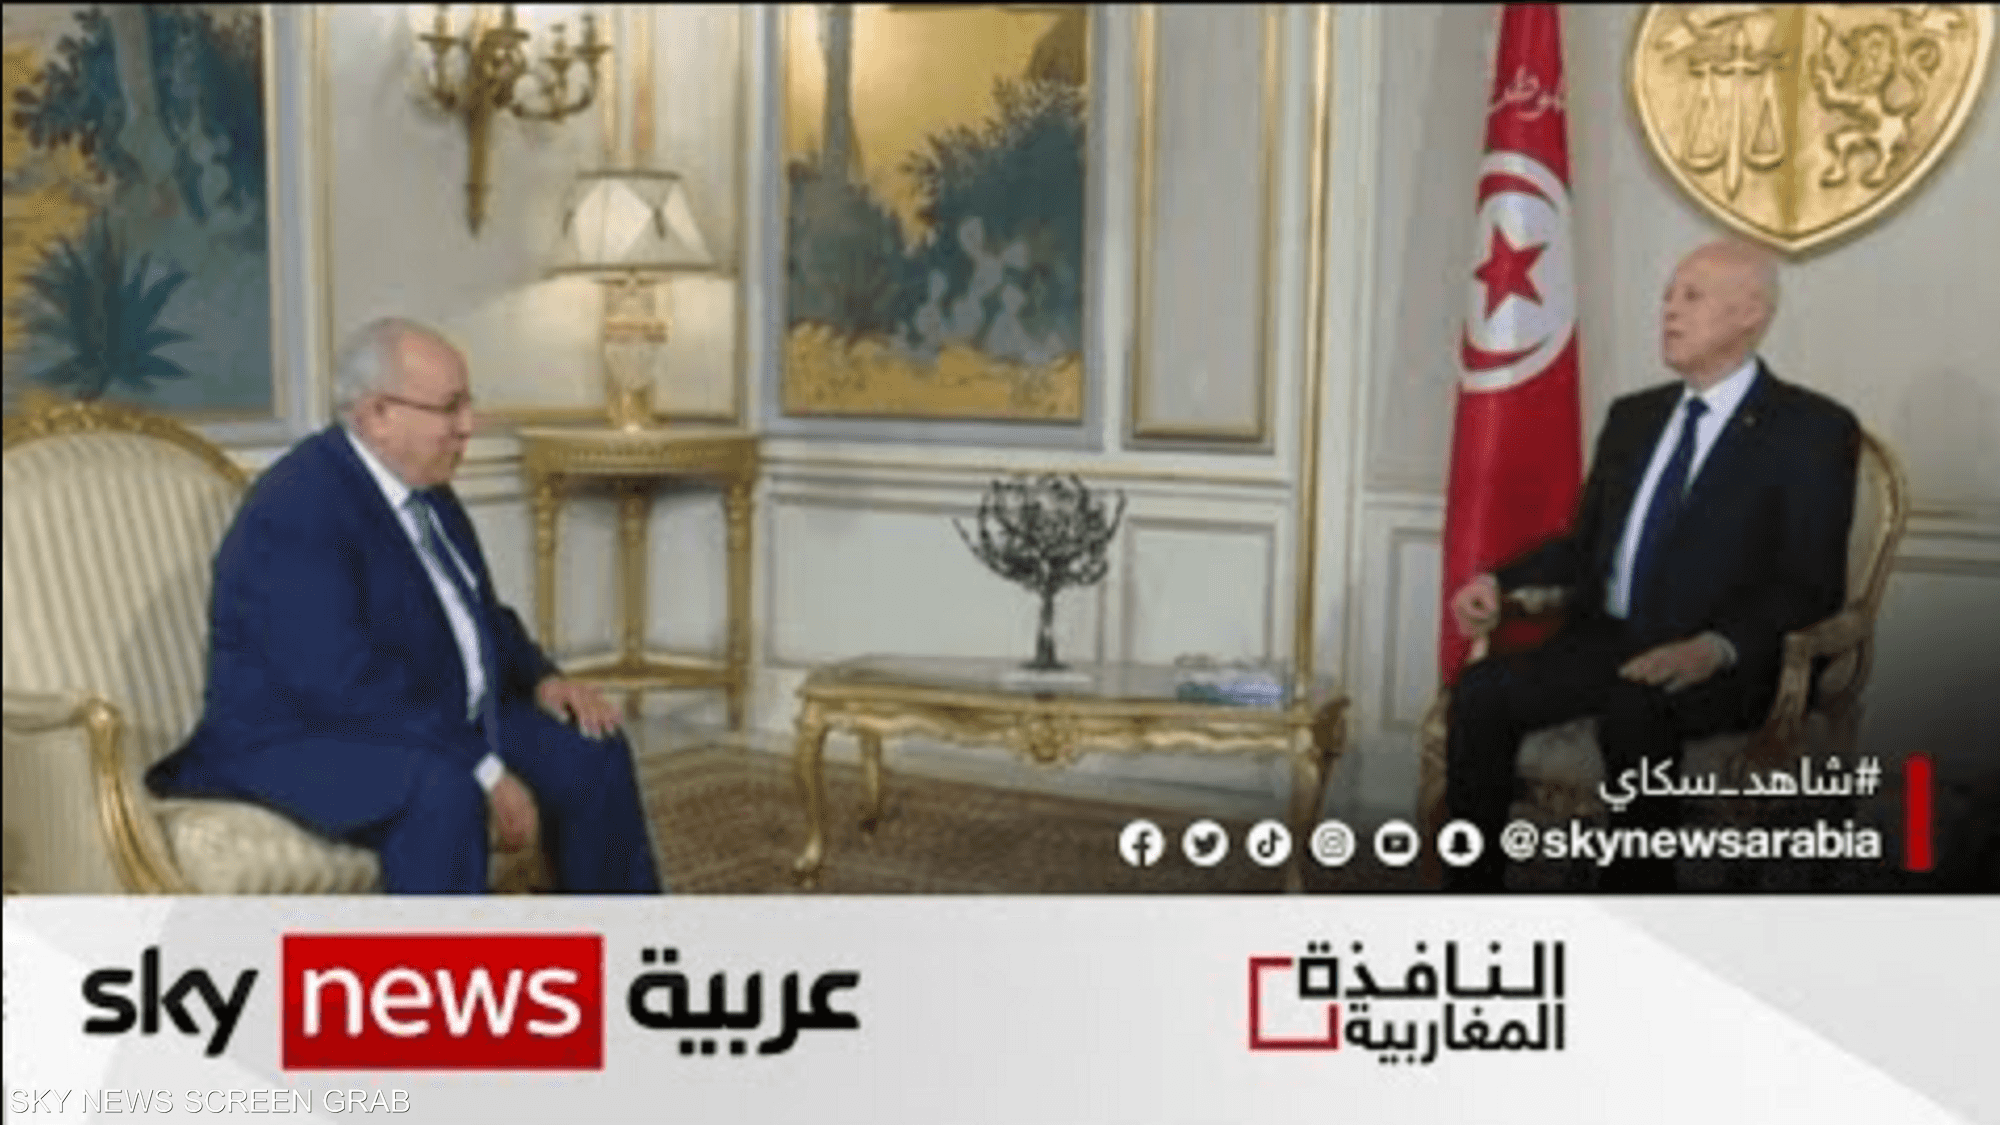 مباحثات تونسية جزائرية لتعزيز التعاون الثنائي